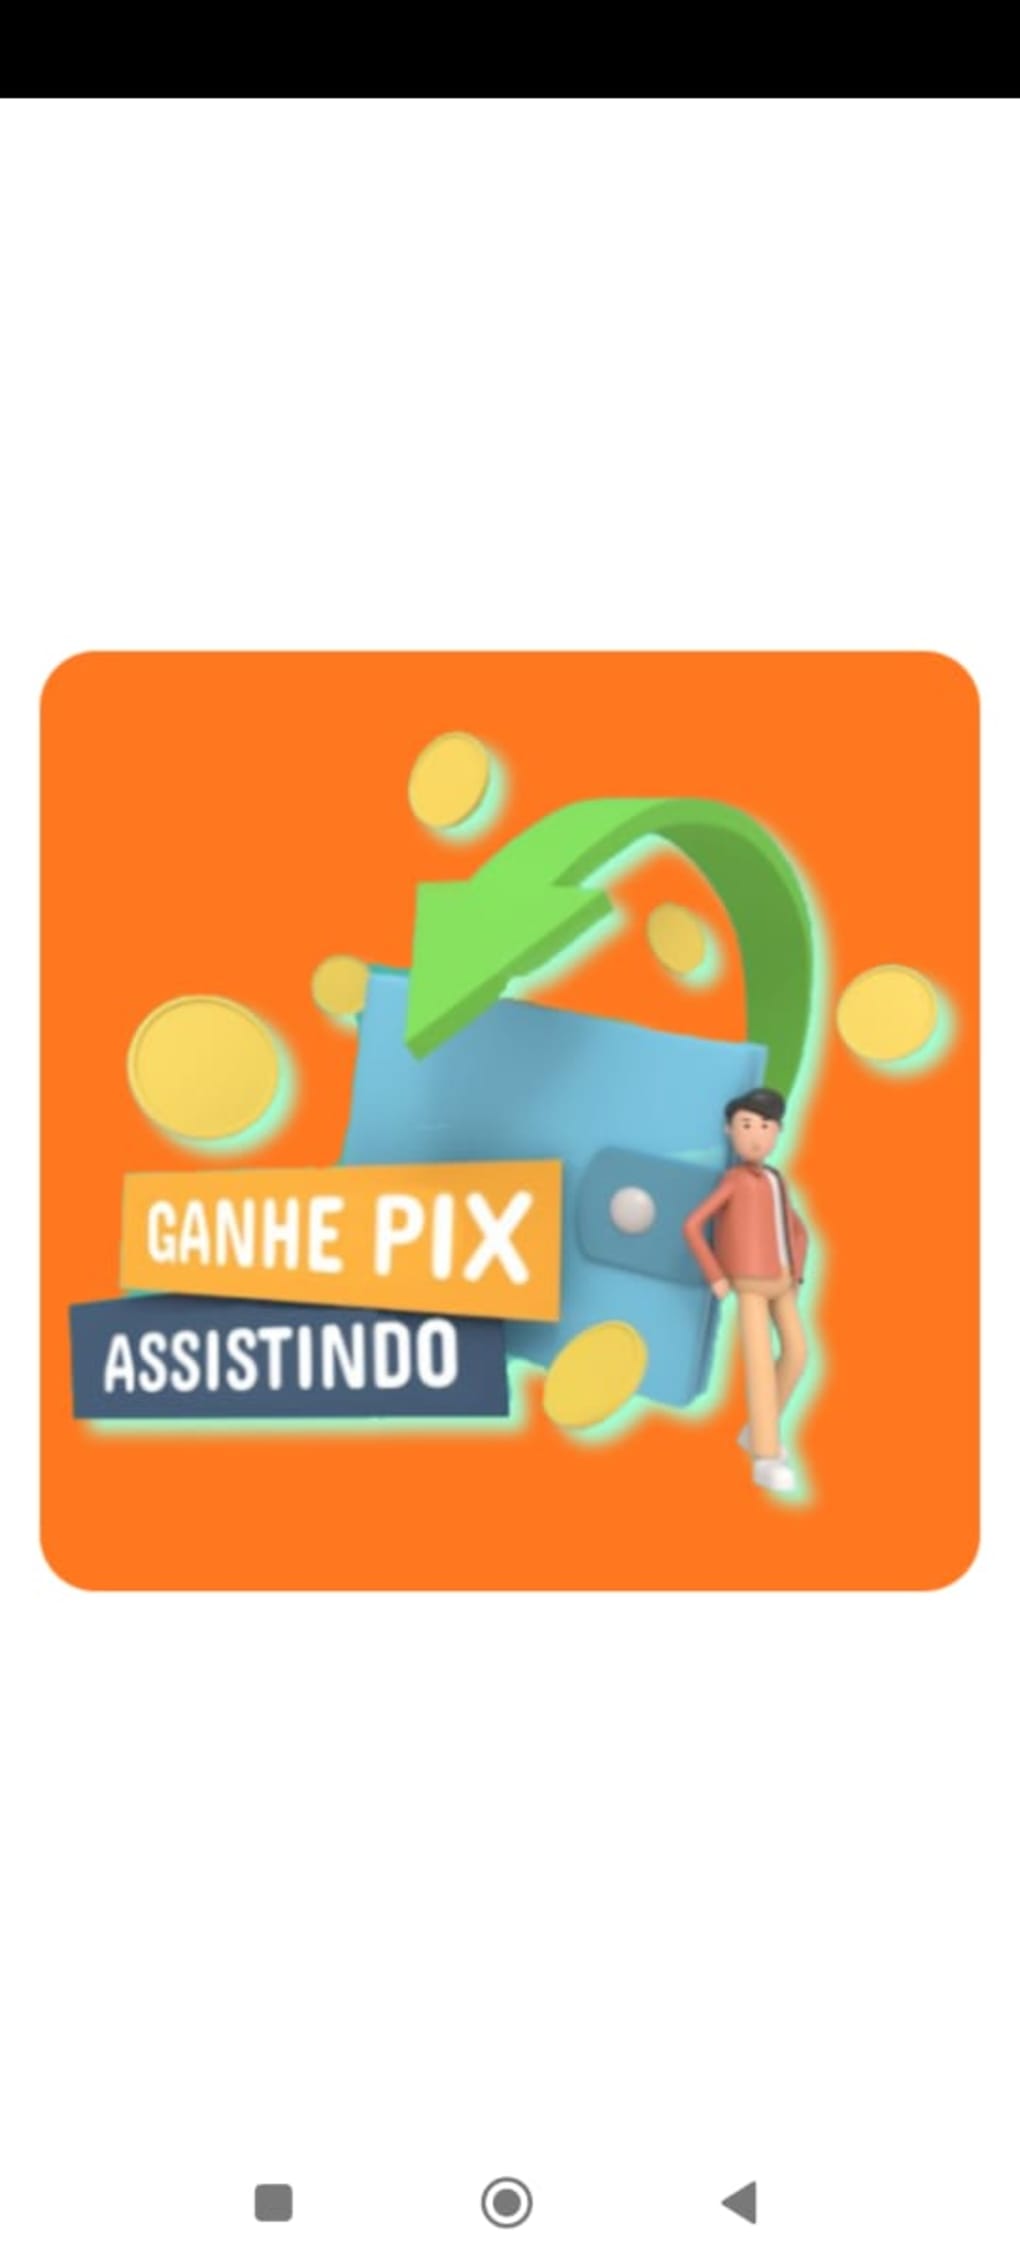 MyPix - Ganhe Pix Assistindo – Apps no Google Play